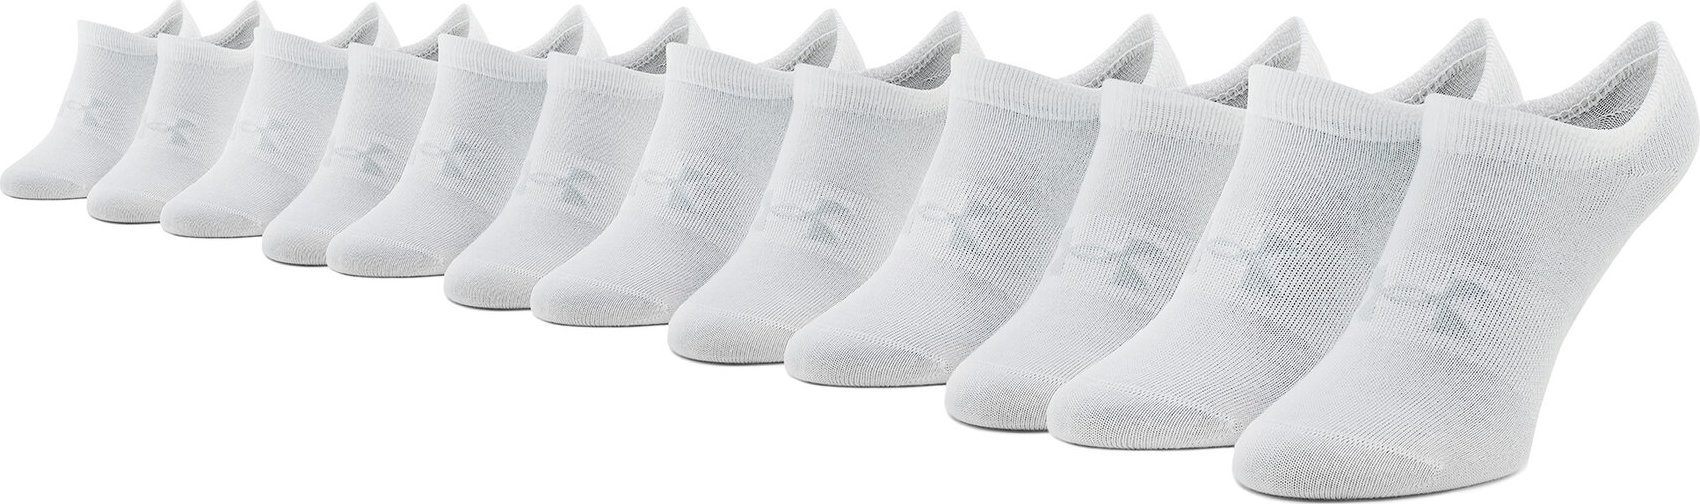 Sada 6 párů dámských nízkých ponožek Under Armour Ua Essential No Show 1370542-100 Bílá